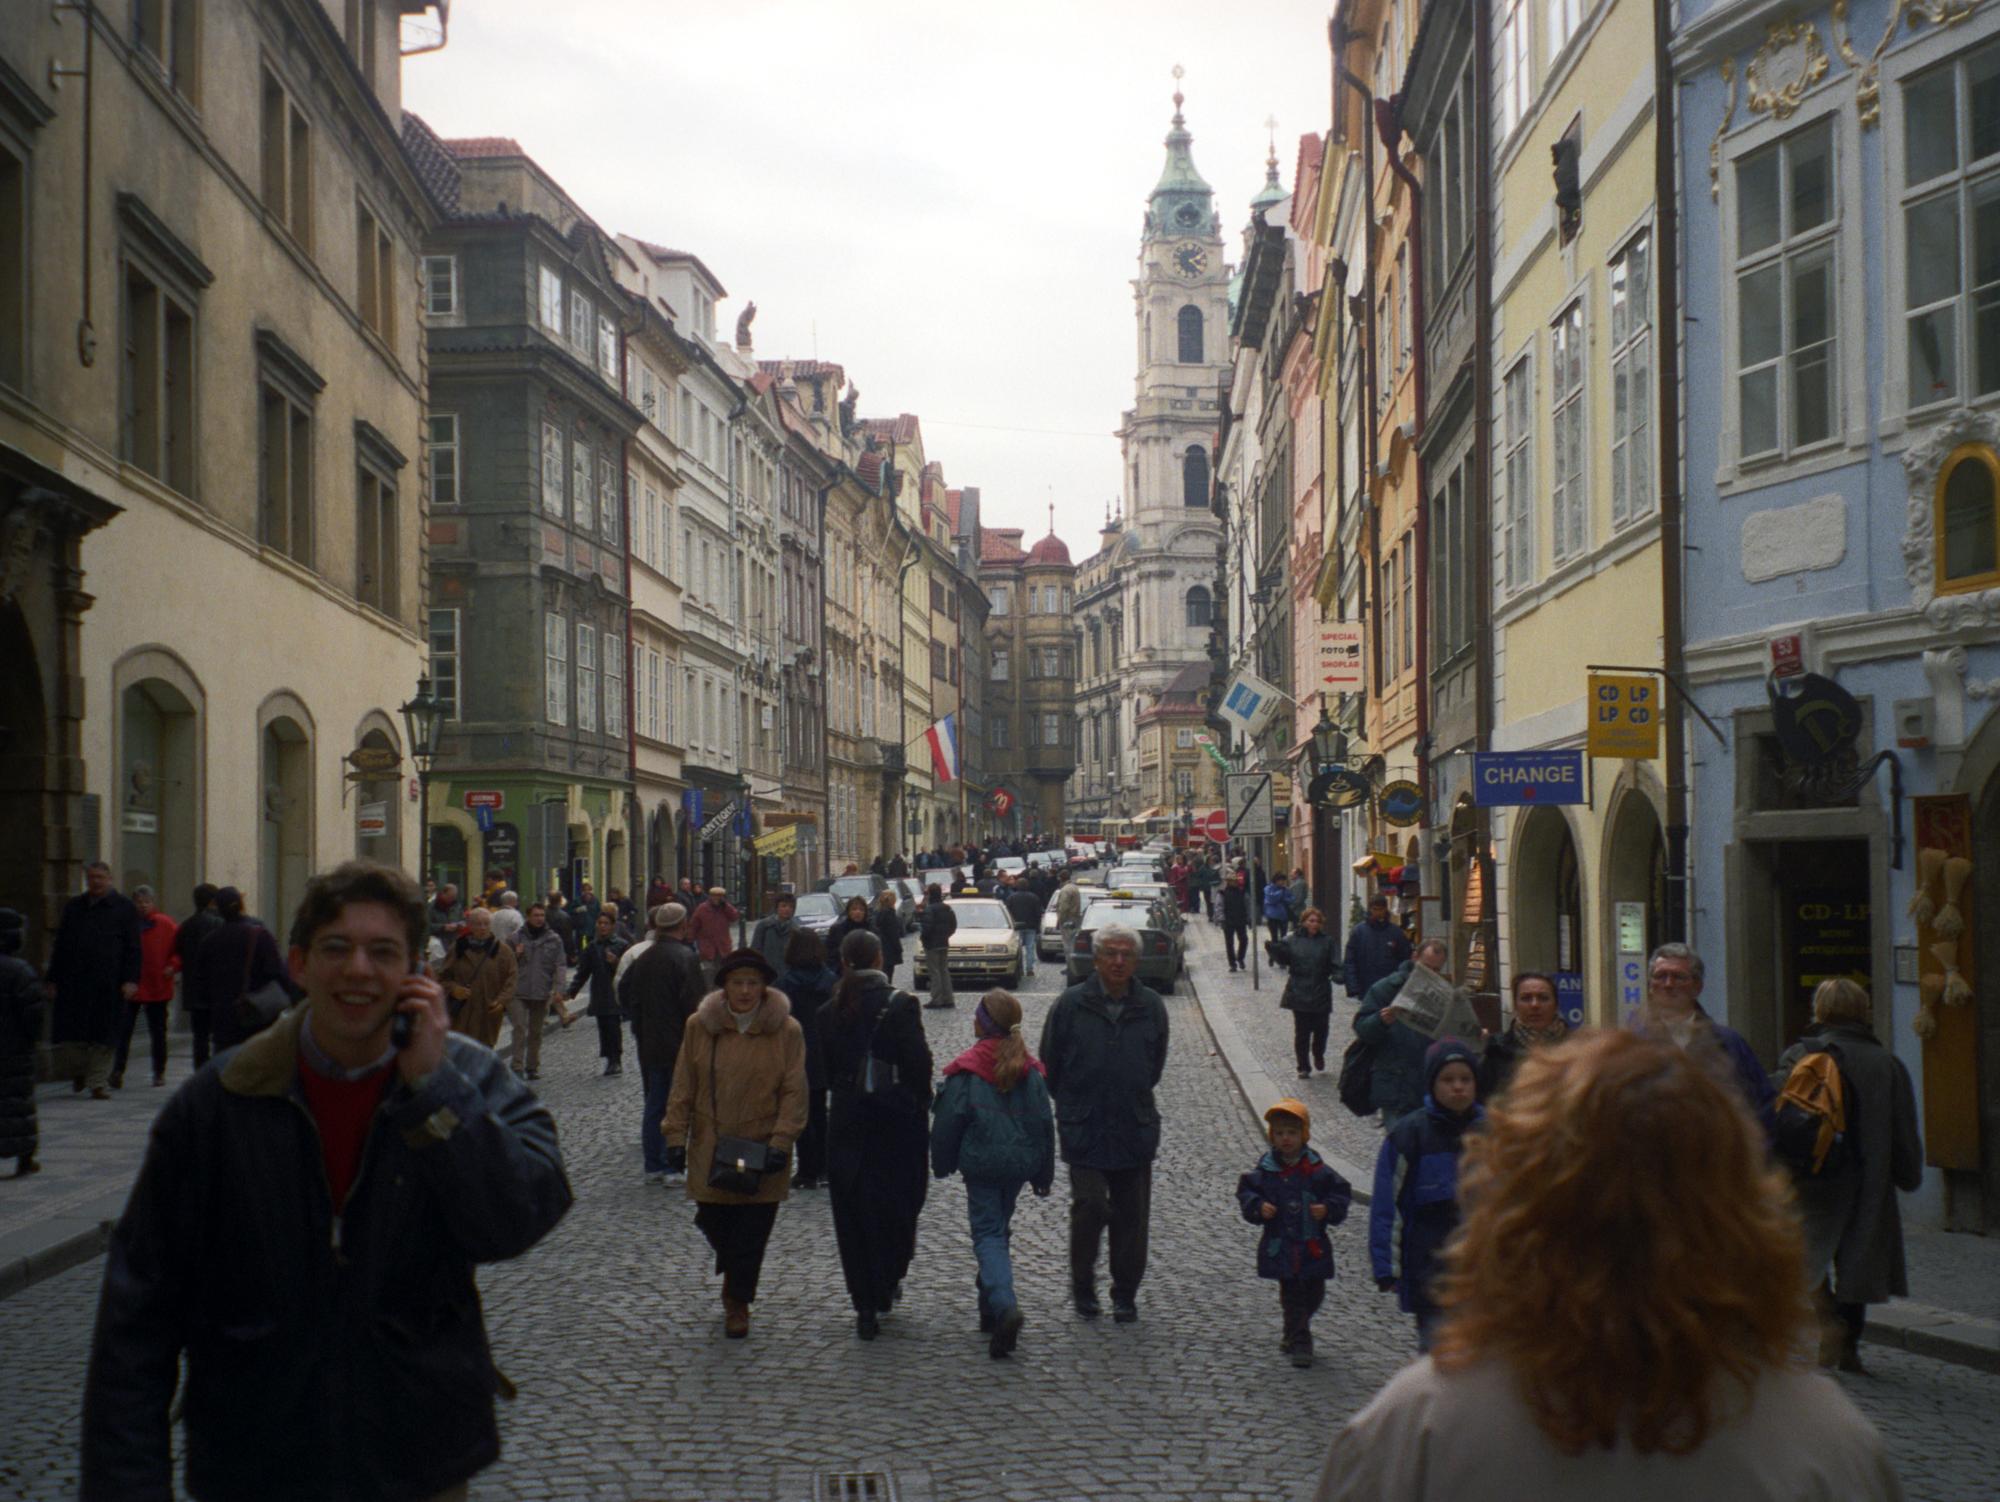 Czech Republic - Old Town